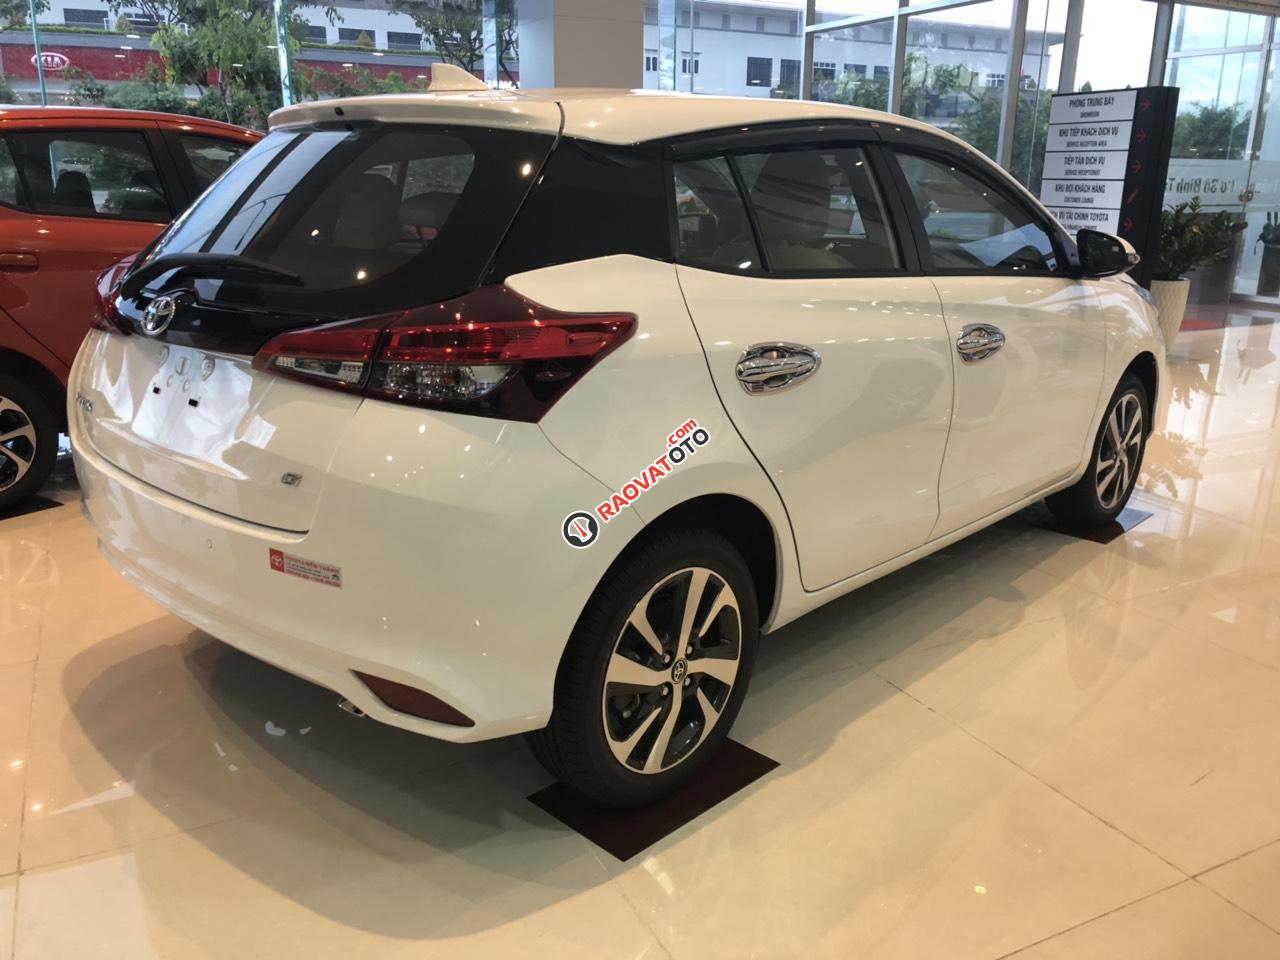 Bán Toyota Yaris 2019 giá tốt - khuyến mãi hấp dẫn - giao xe ngay - 0909 399 882-3